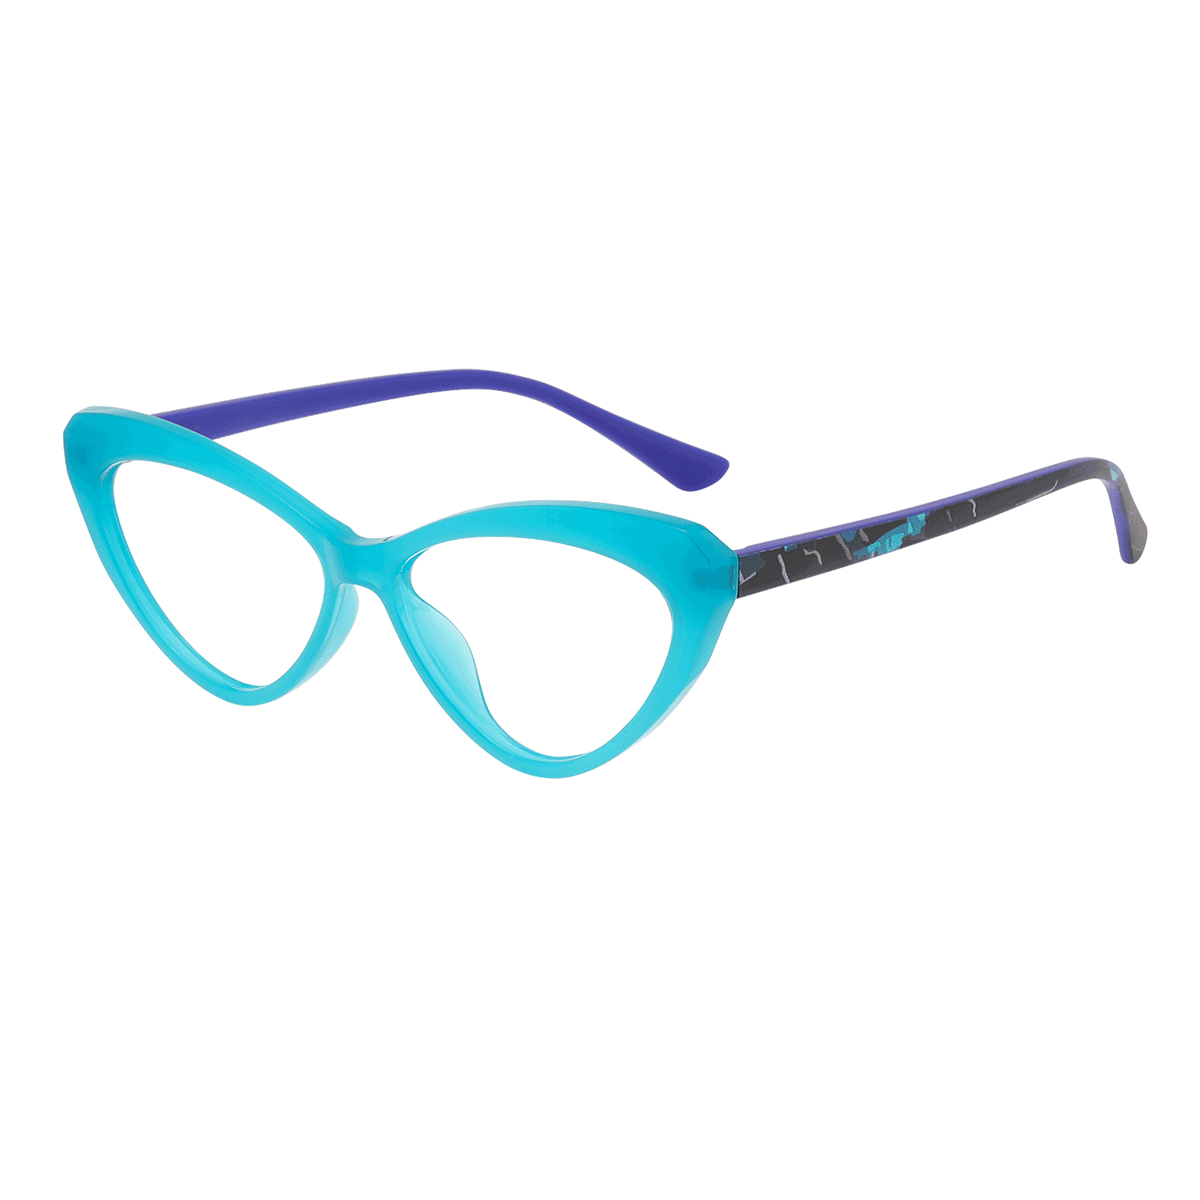 Pindus - Cat-eye Blue Reading Glasses for Women